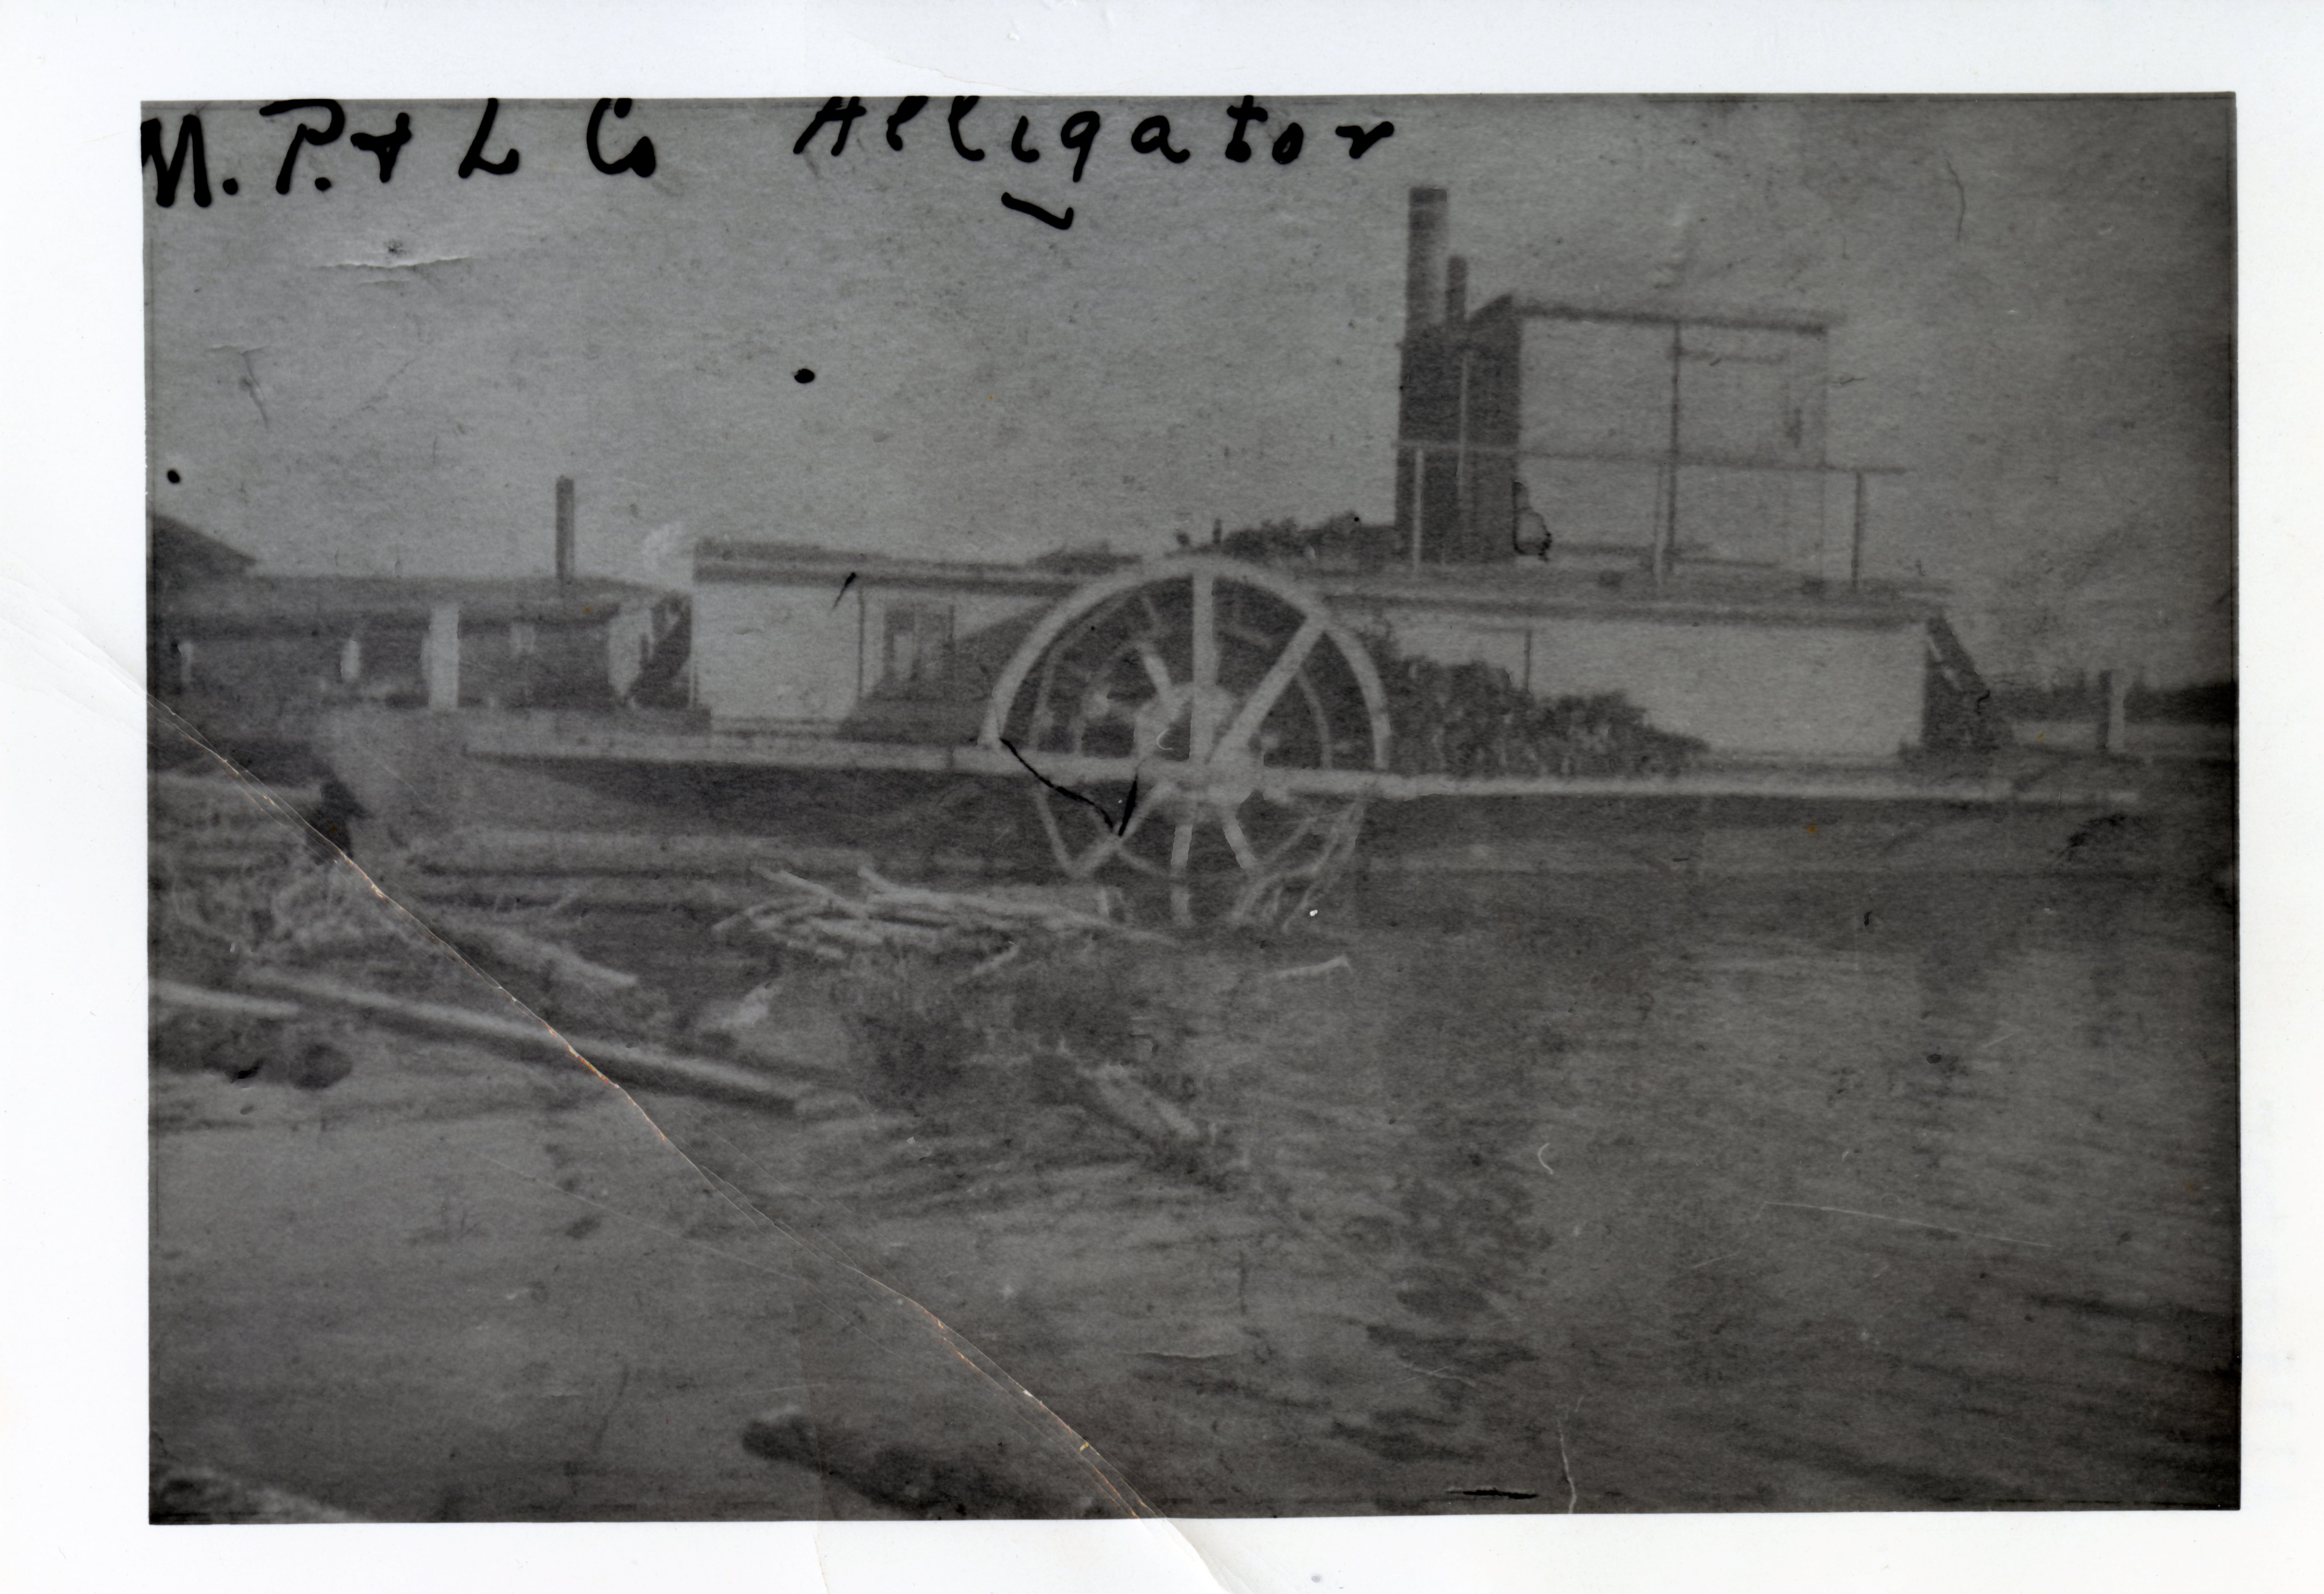 Photographie en noir et blanc, de mauvaise qualité, d’un bateau à vapeur qui est accosté. Sur la rive, un bâtiment et des billots flottent sur l’eau.